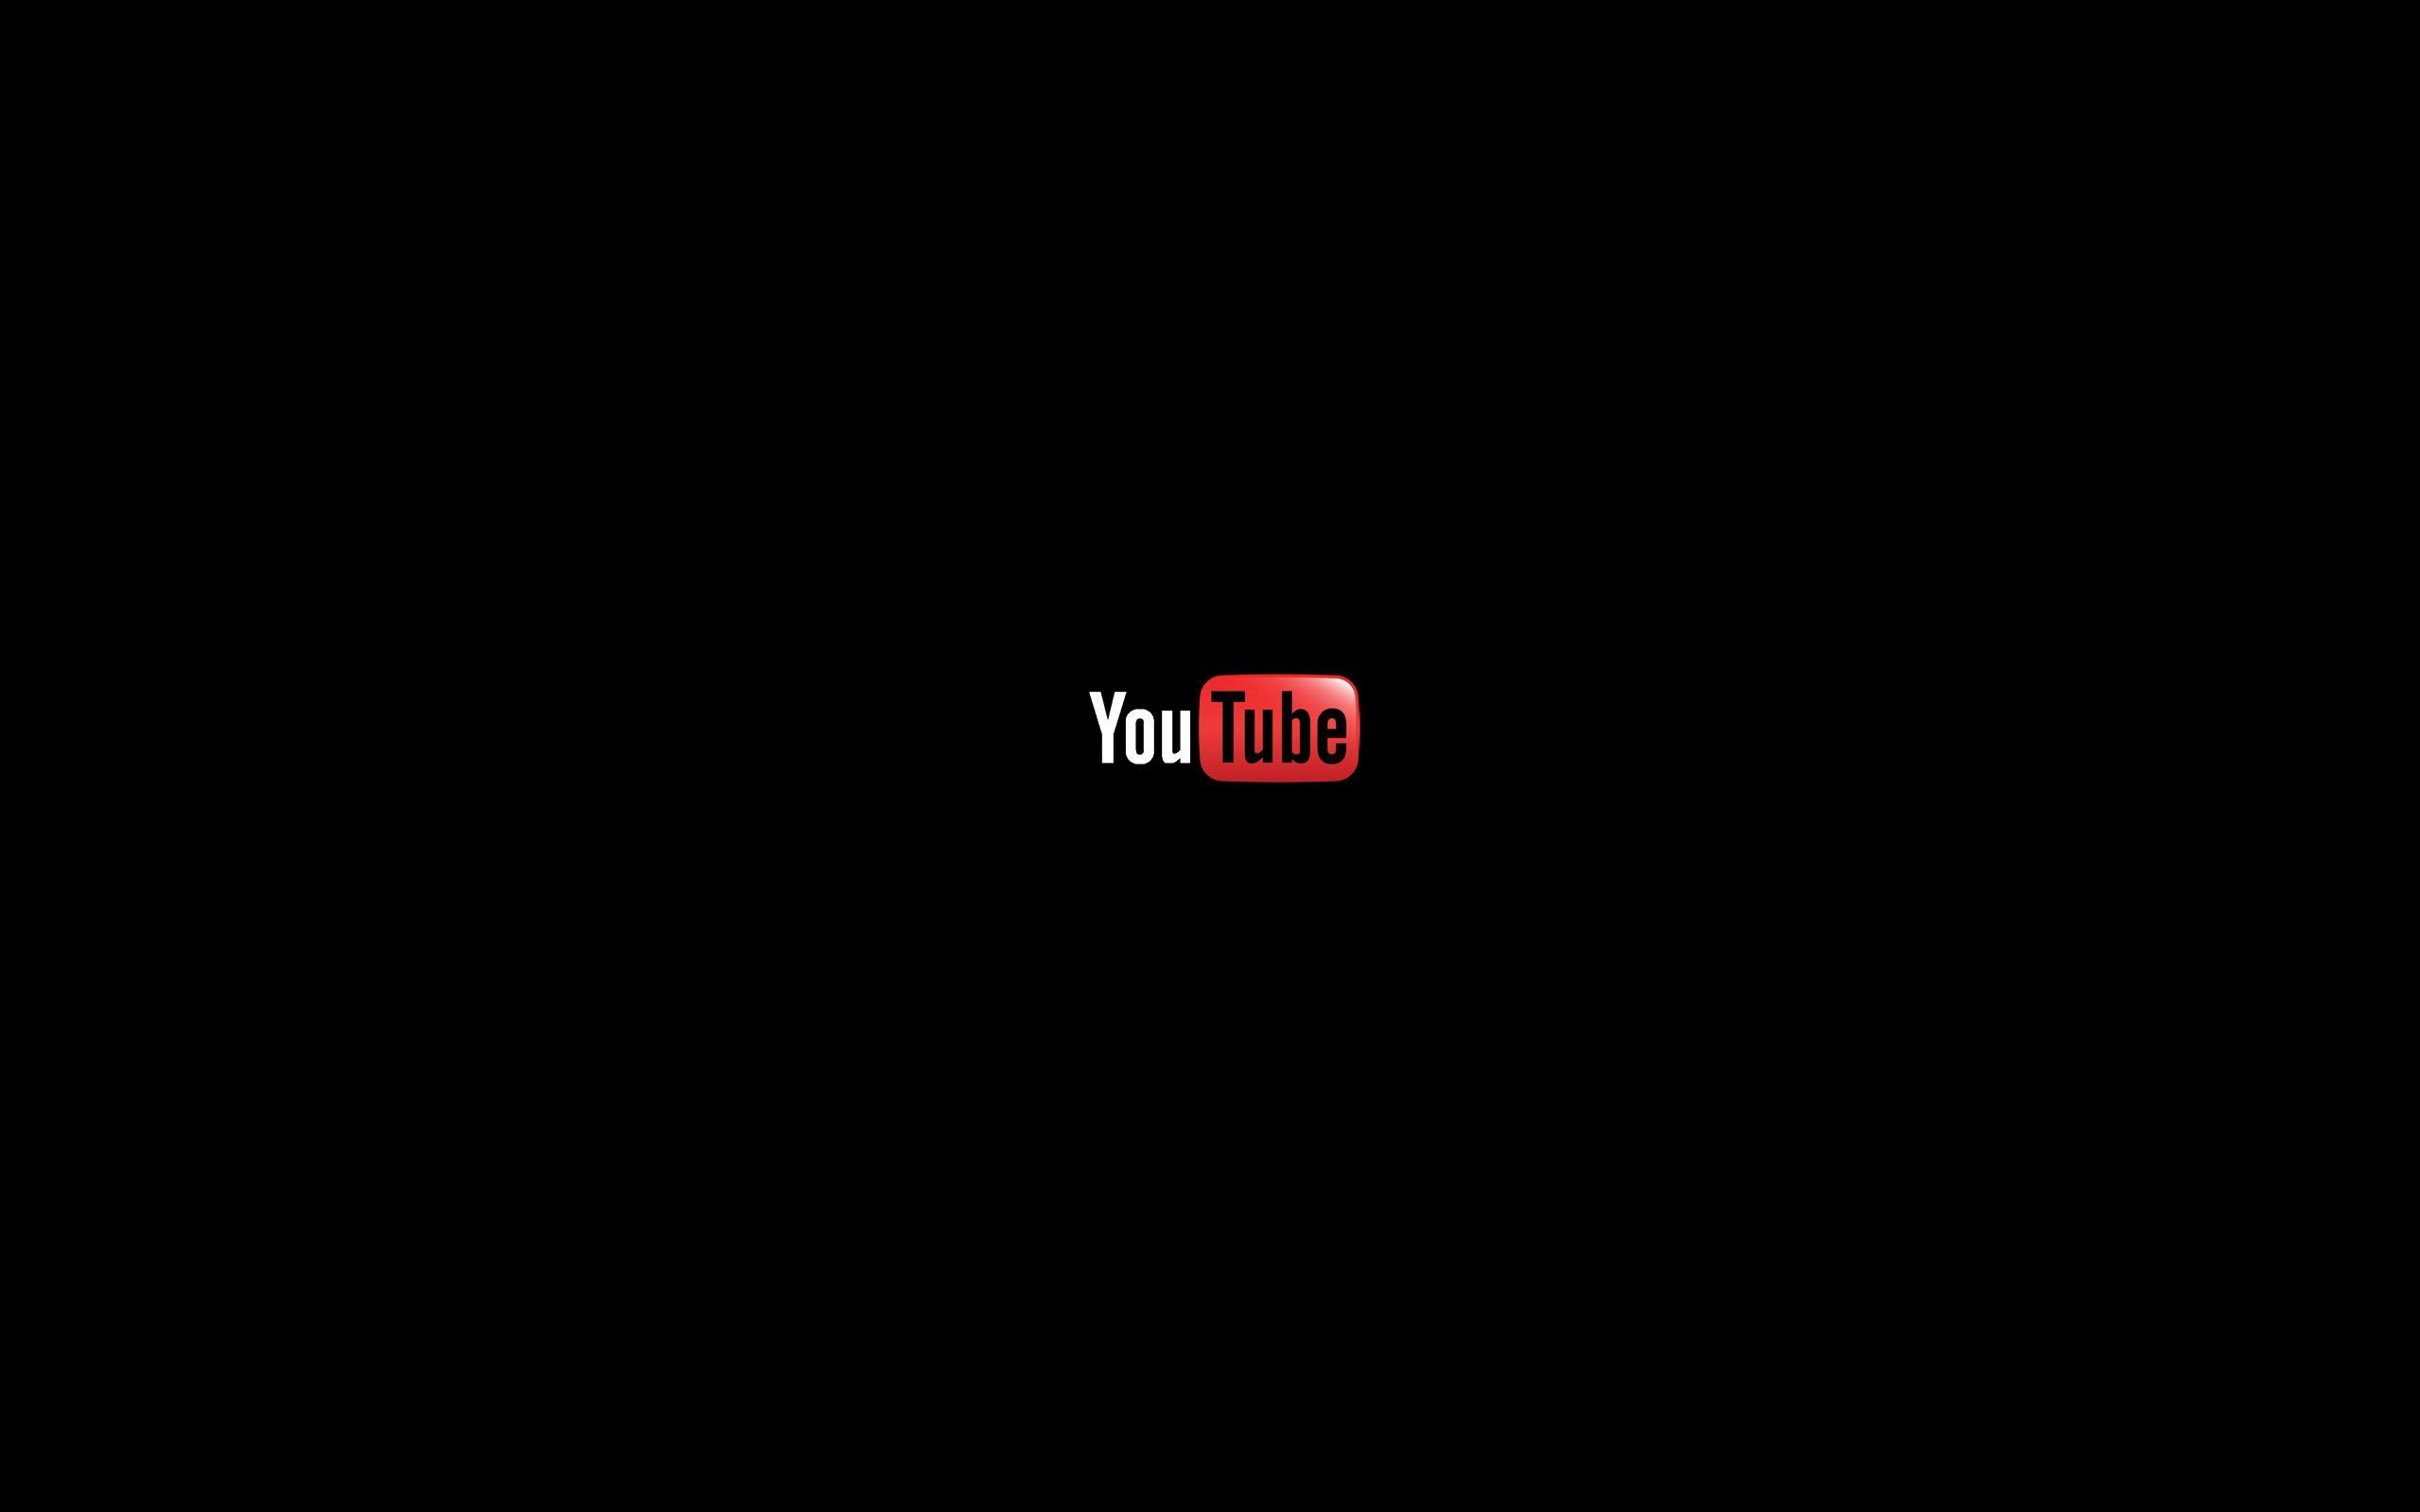 Red Diagonal Tiles  HD Background Loop  YouTube  Youtube banner design  Youtube banner backgrounds Youtube art